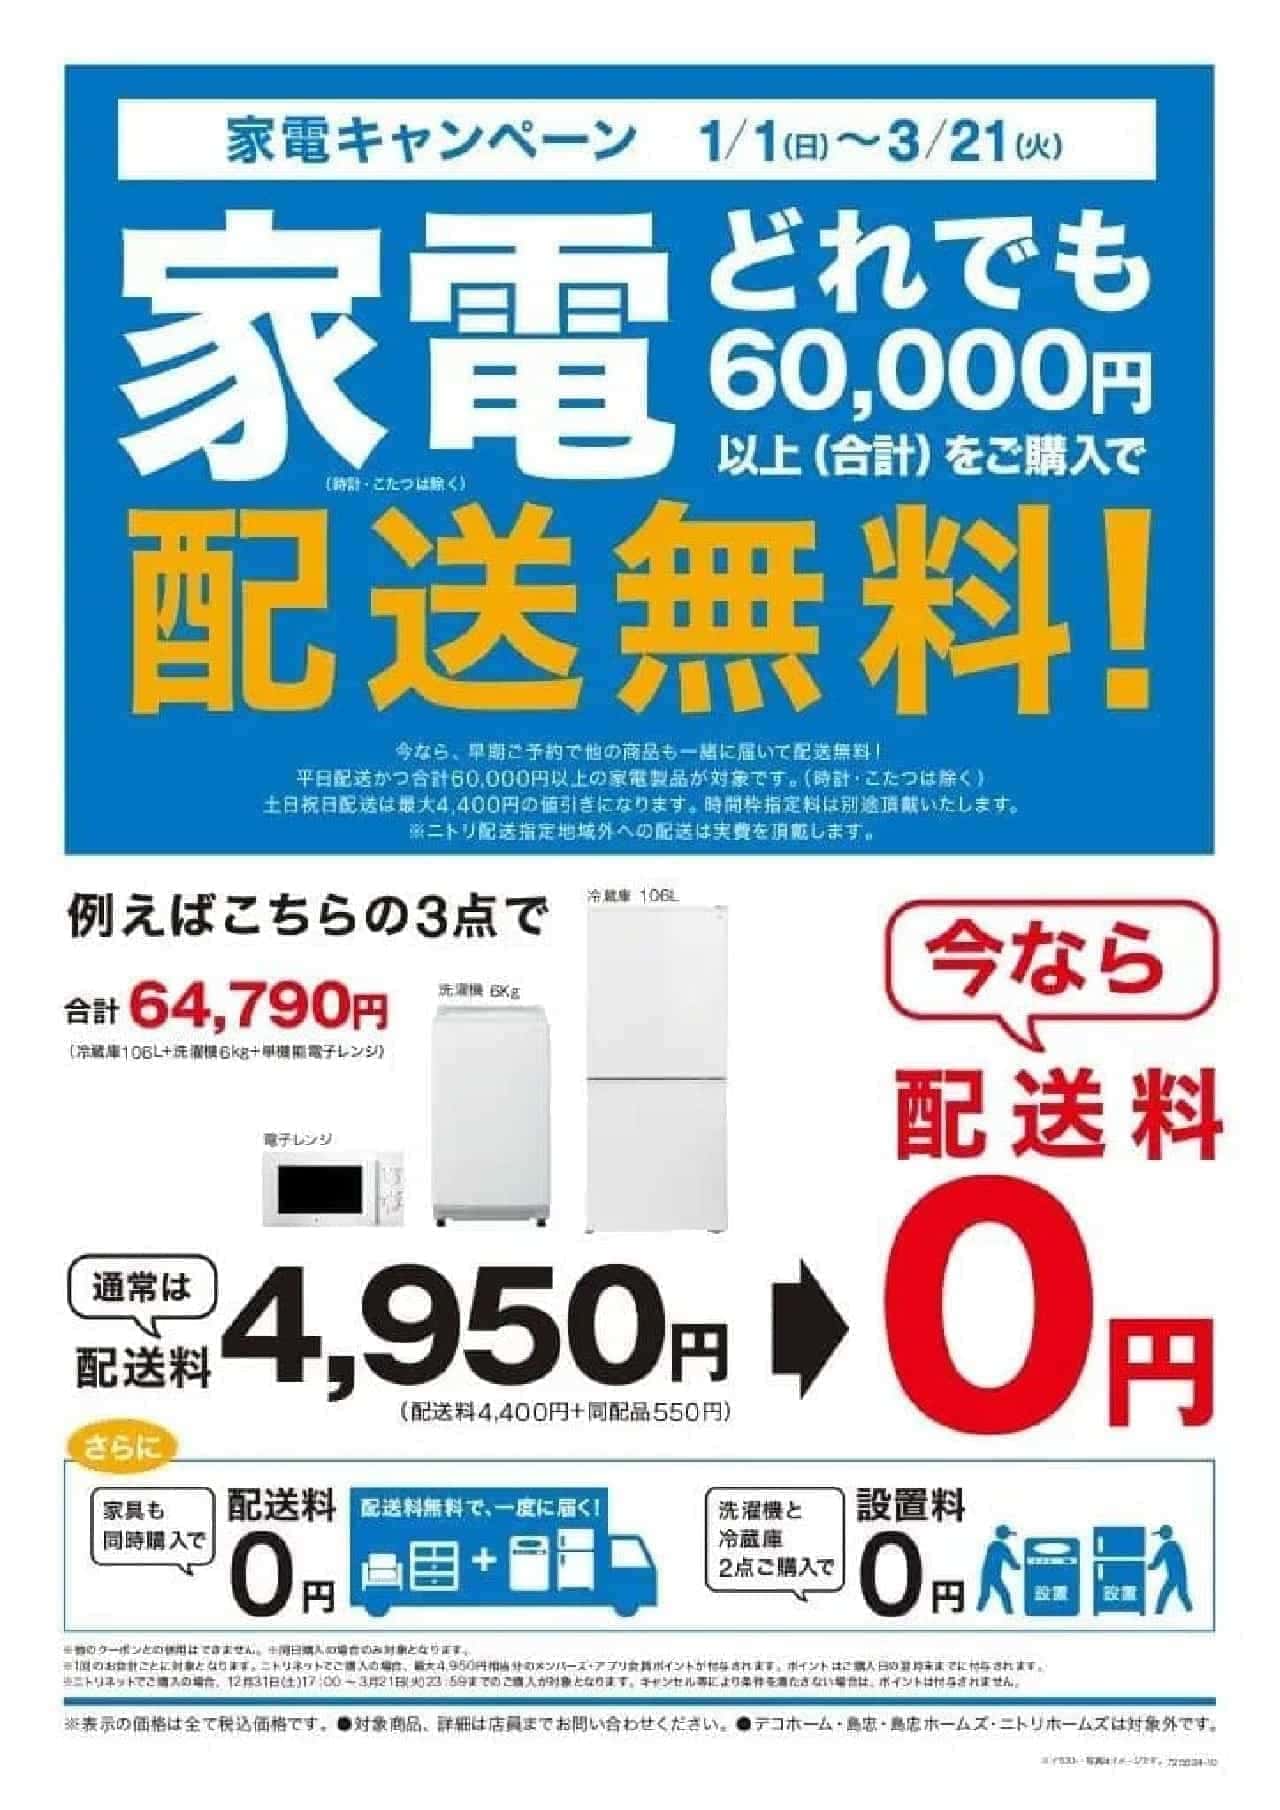 Nitori "Free Appliance Delivery Campaign